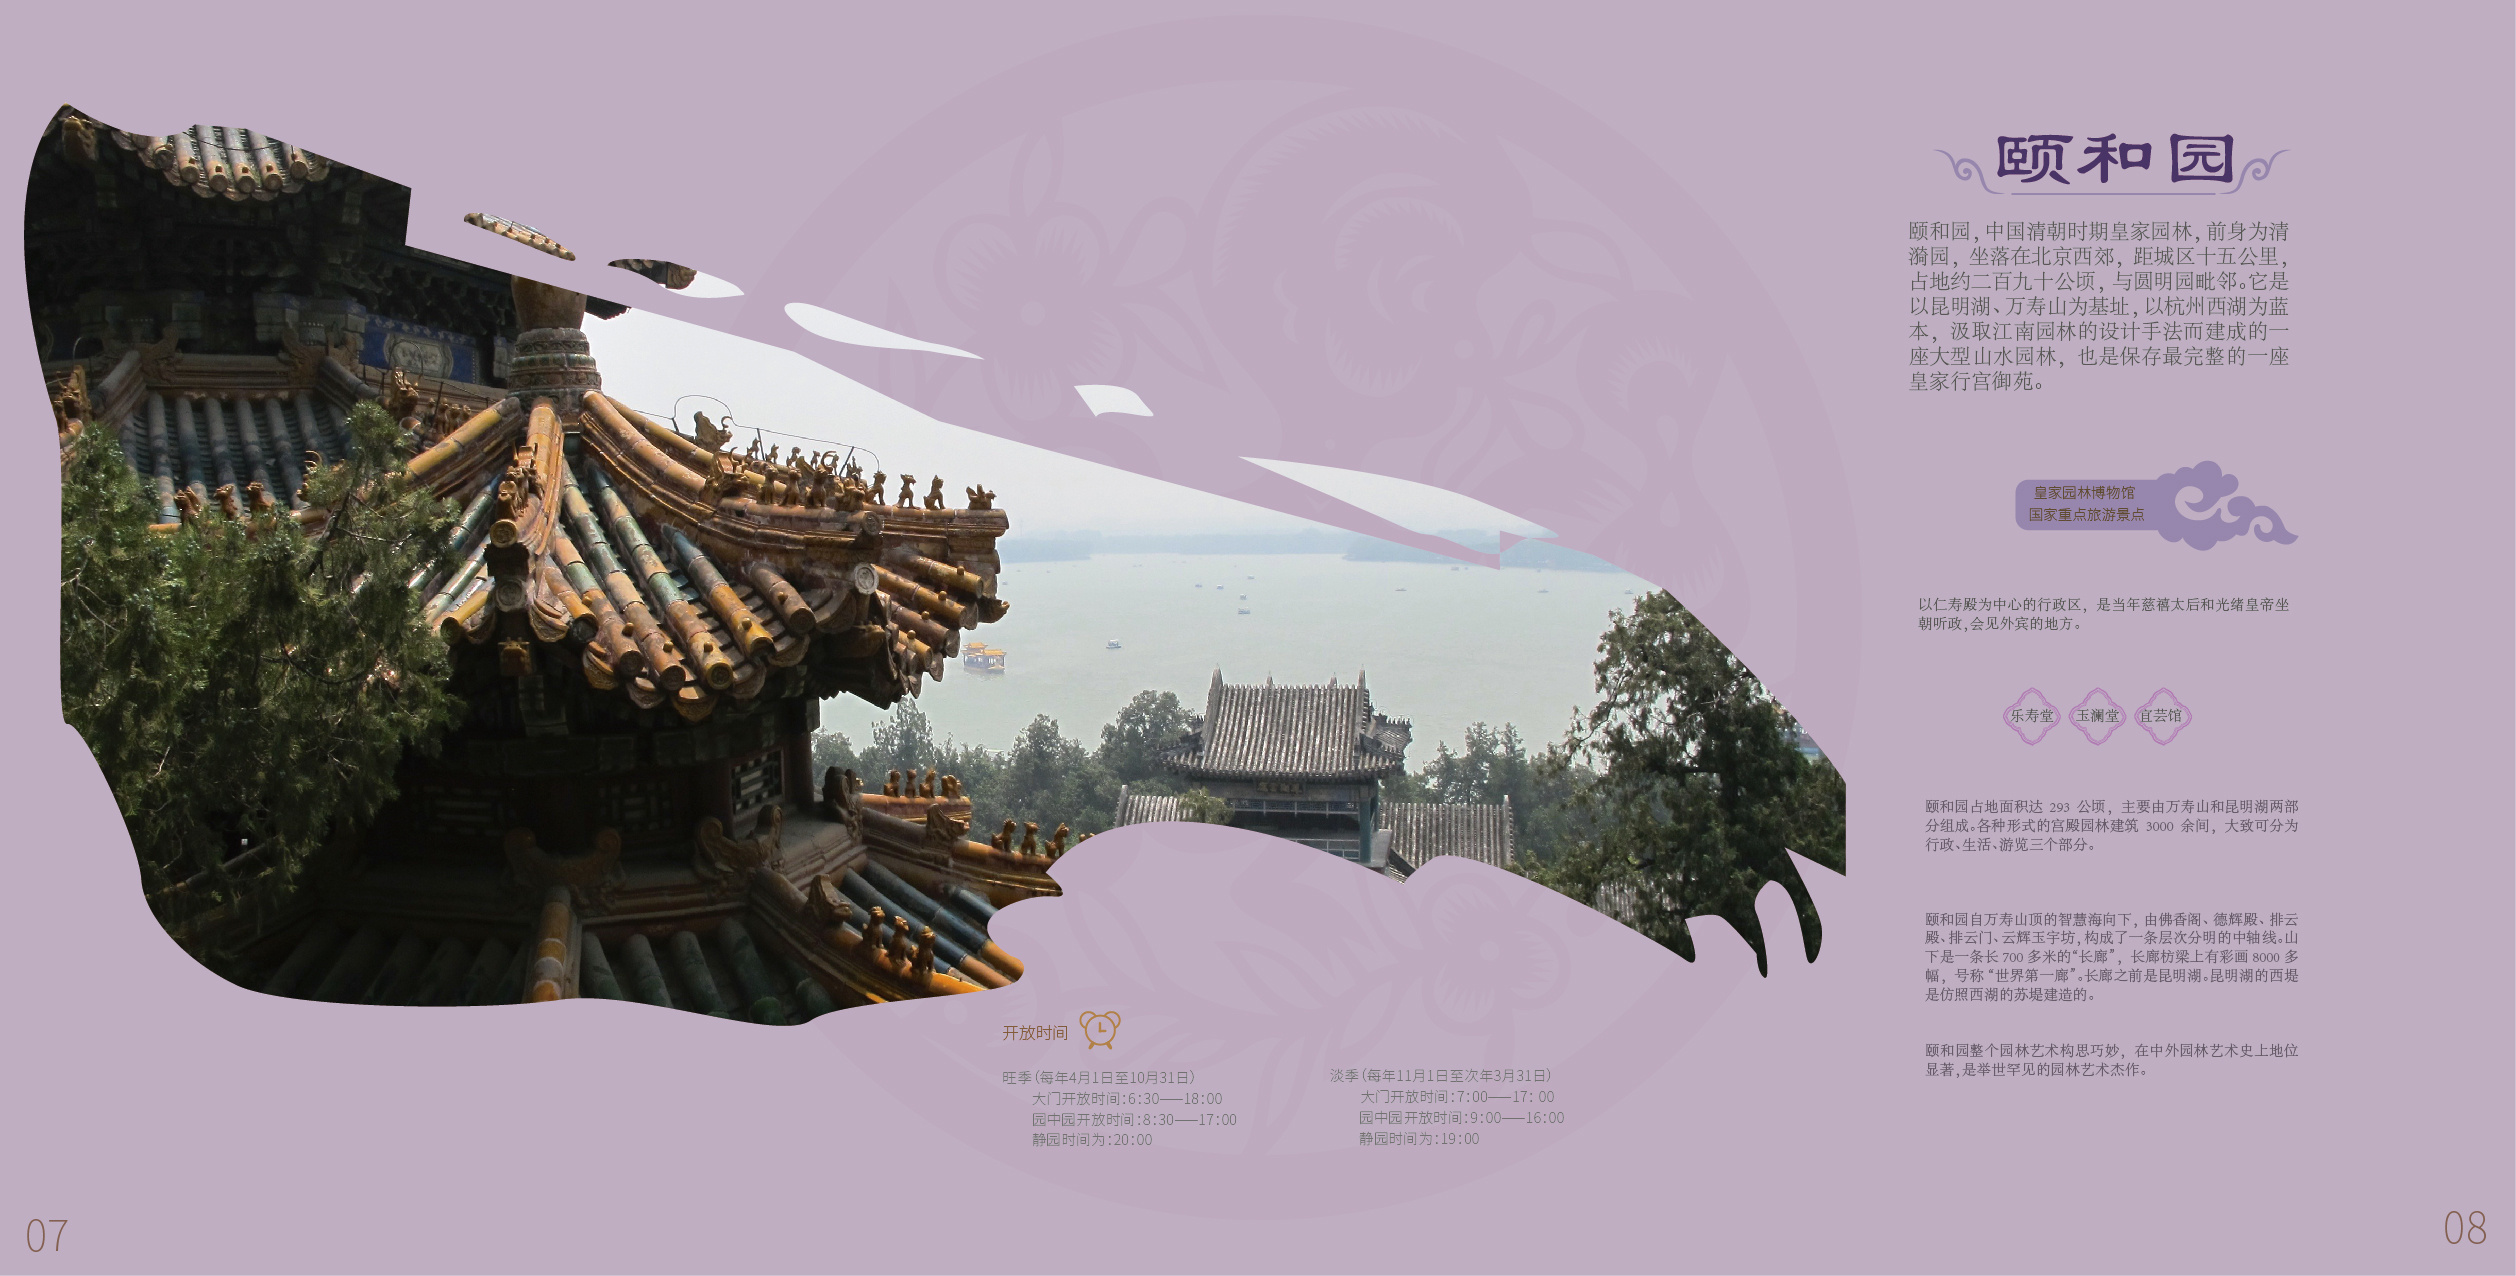 旅游旅行社北京旅游特别惊喜天天发团优惠特价海报模板图片下载 - 觅知网